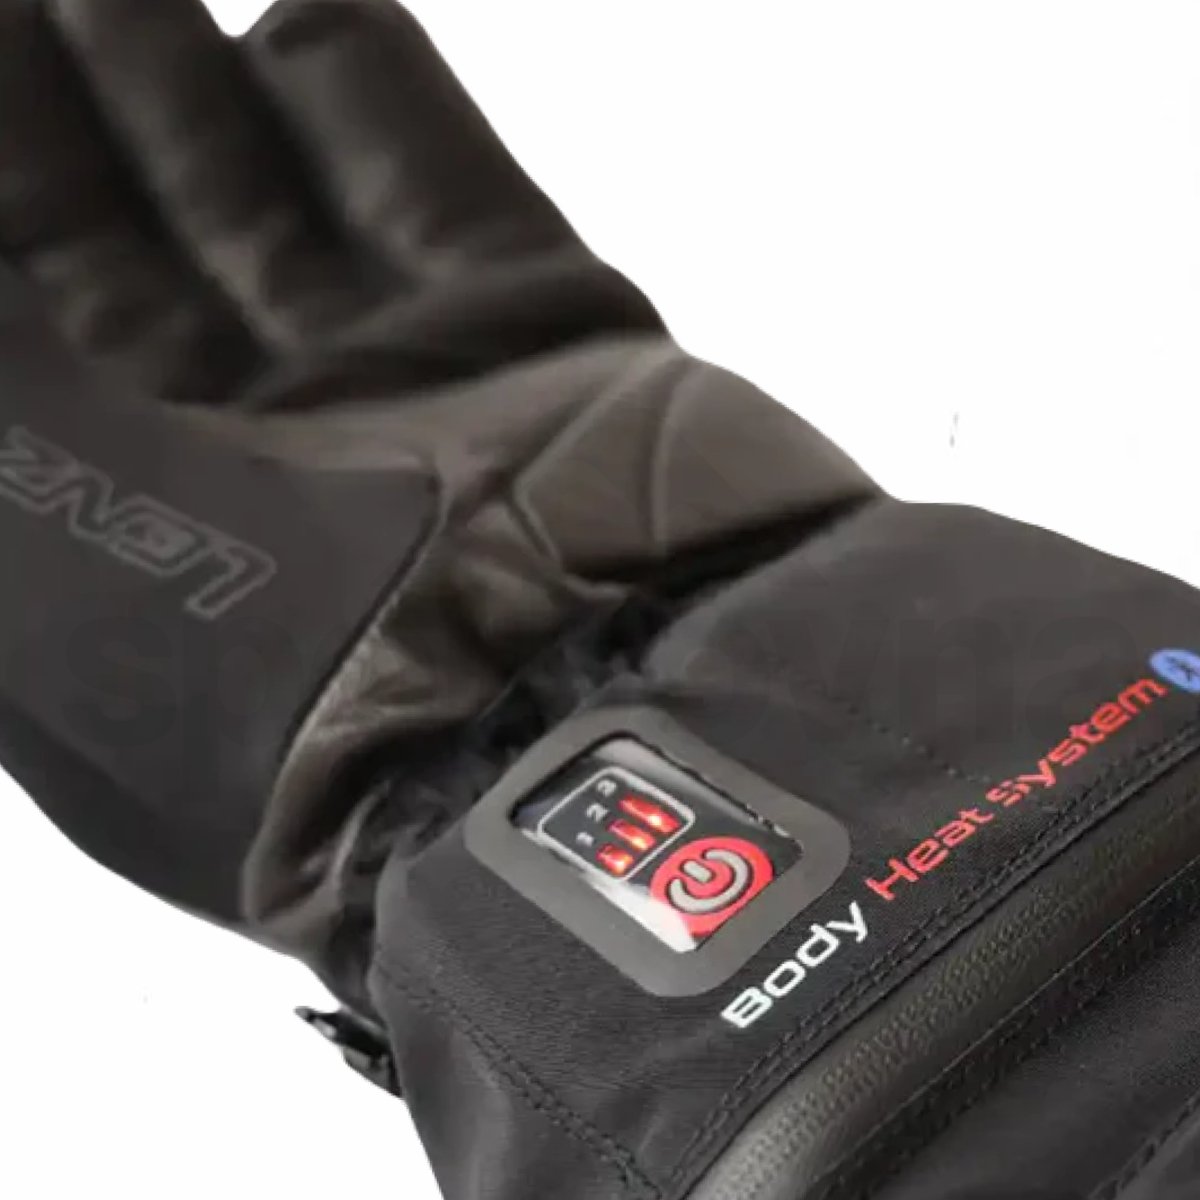 Rukavice vyhřívané Lenz Heat glove 6.0 Finger Cap M - černá (bez baterie)